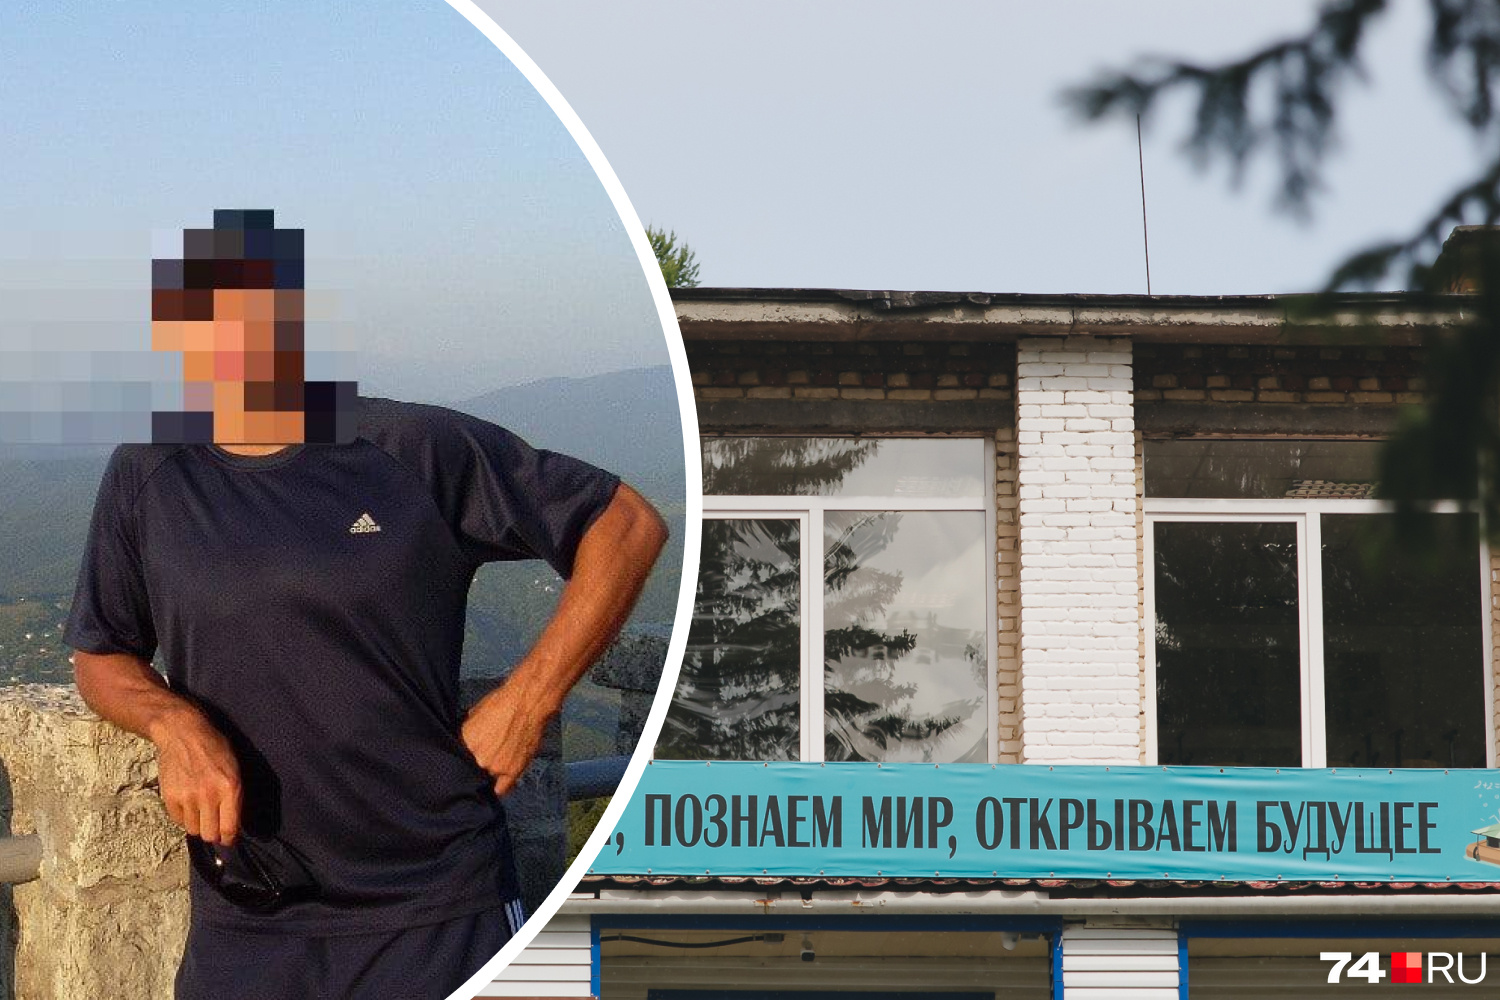 Учителя физкультуры школьница обвинила в домогательствах, но дело  прекратили - 8 августа 2022 - 29.ru